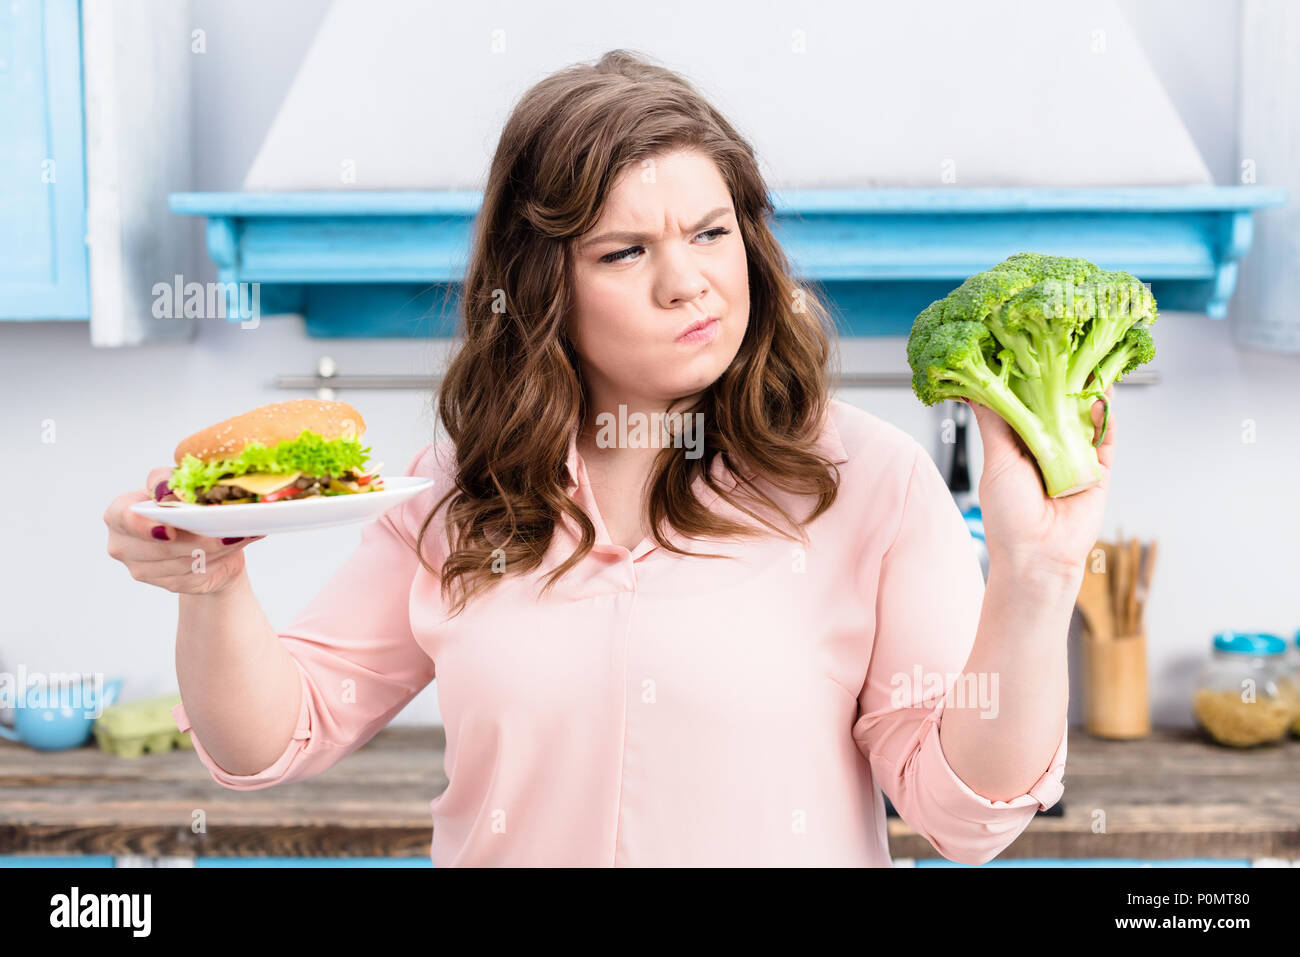 Ritratto di donna sovrappeso con burger e broccoli freschi in mani in cucina a casa, mangiare sano concetto Foto Stock